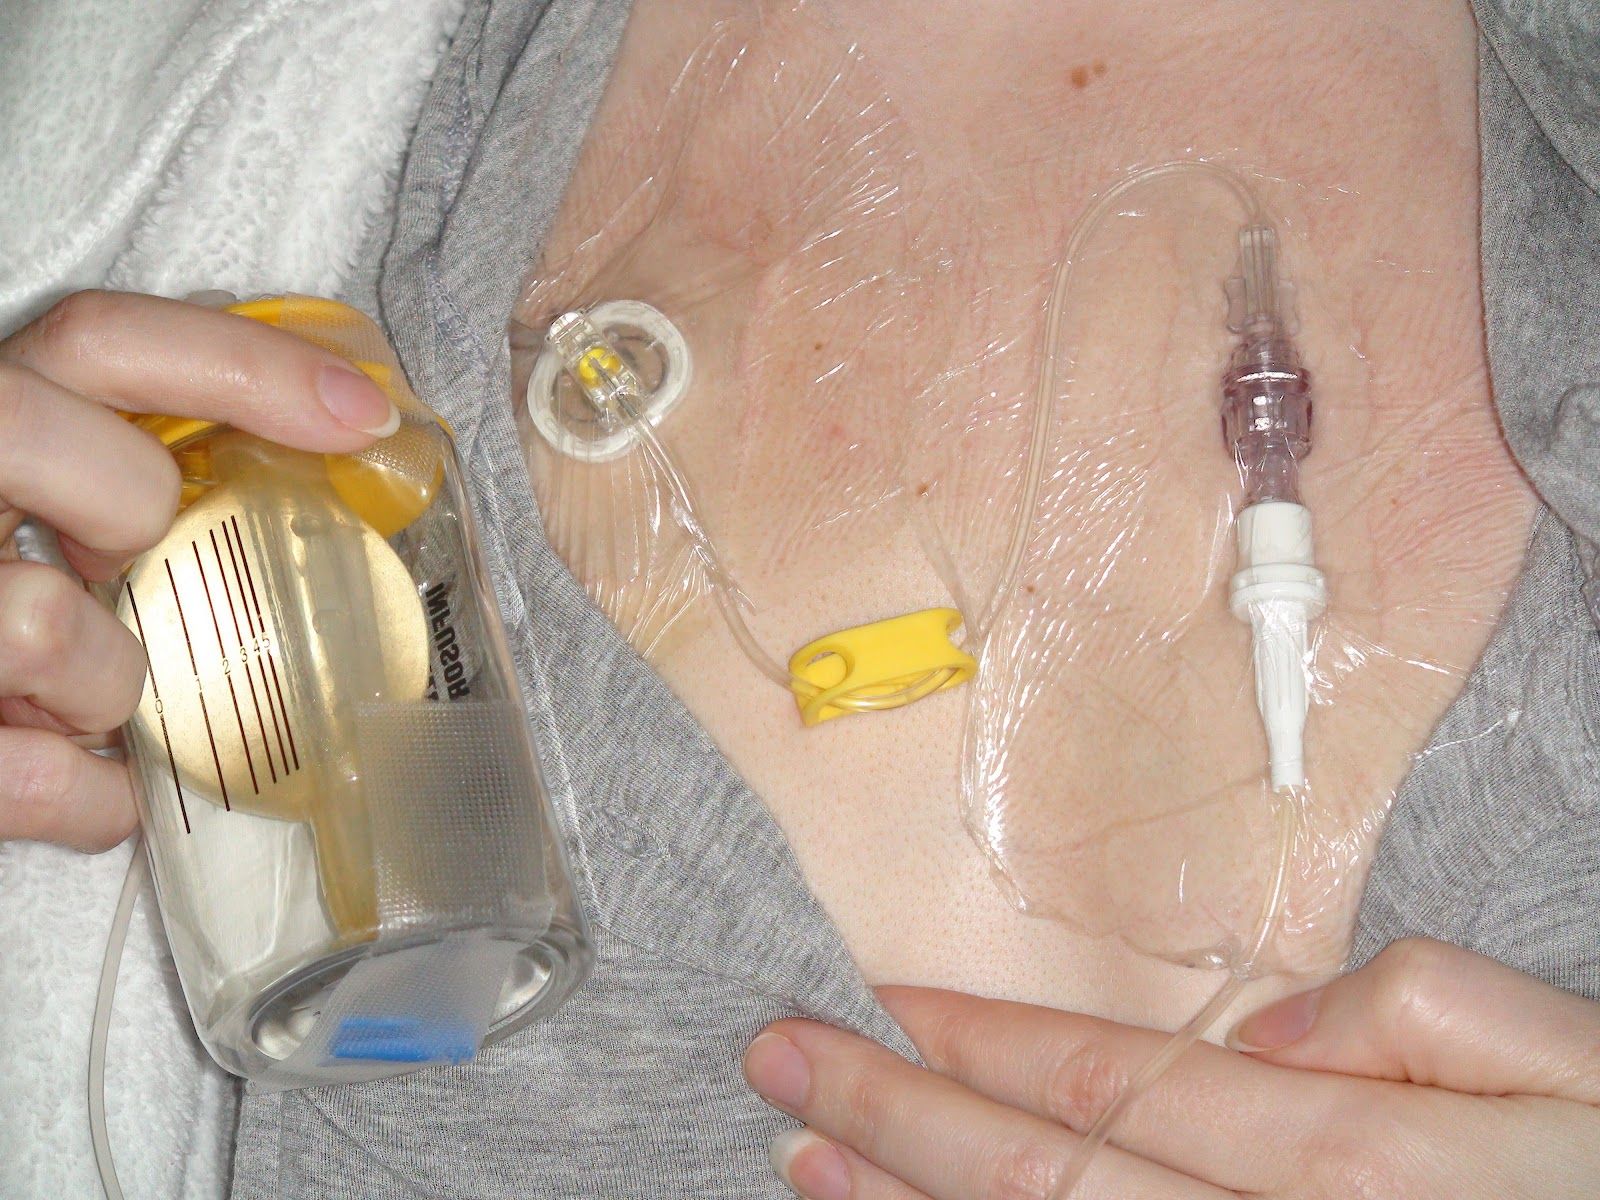 شیمی درمان با کاتتر پورت Port Catheter-mediated Chemotherapy